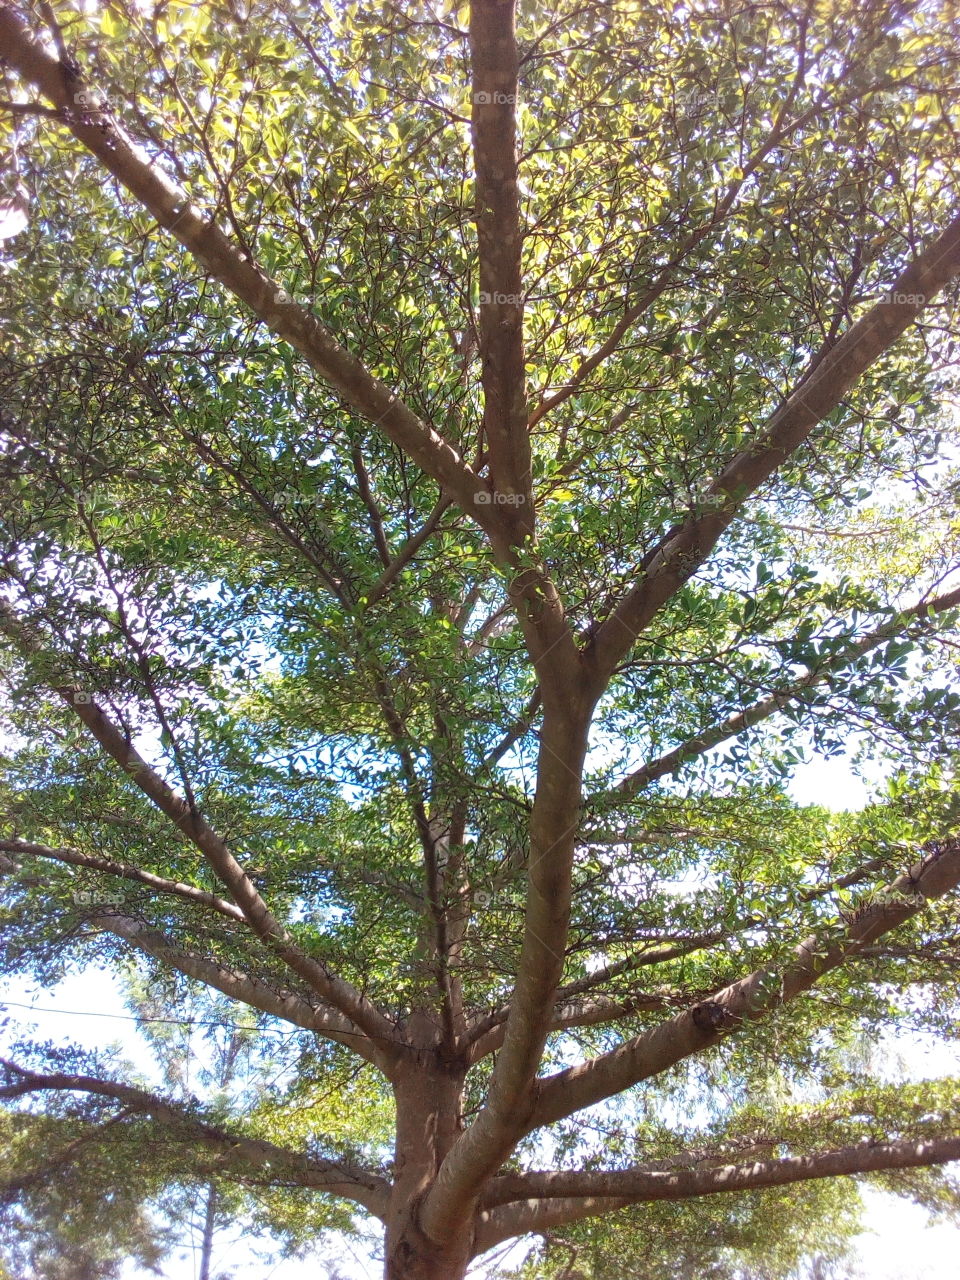 Tree shade